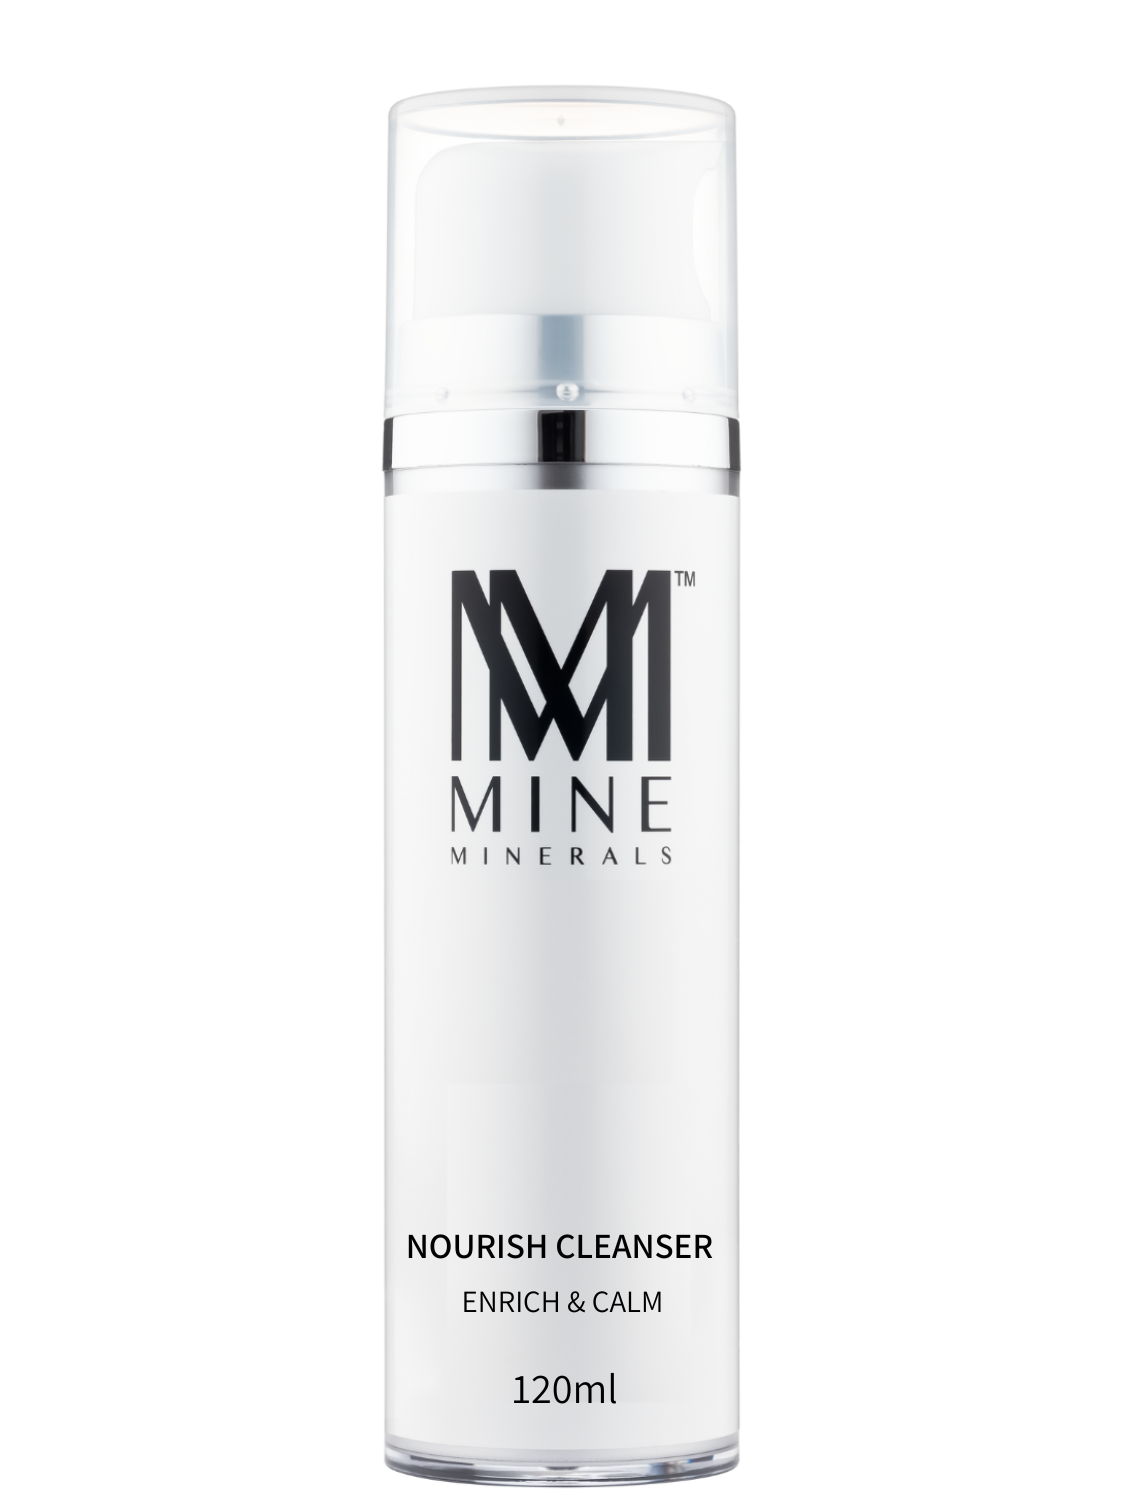 Nourish Cleanser - 120ml (Nutrient) - Mine Minerals